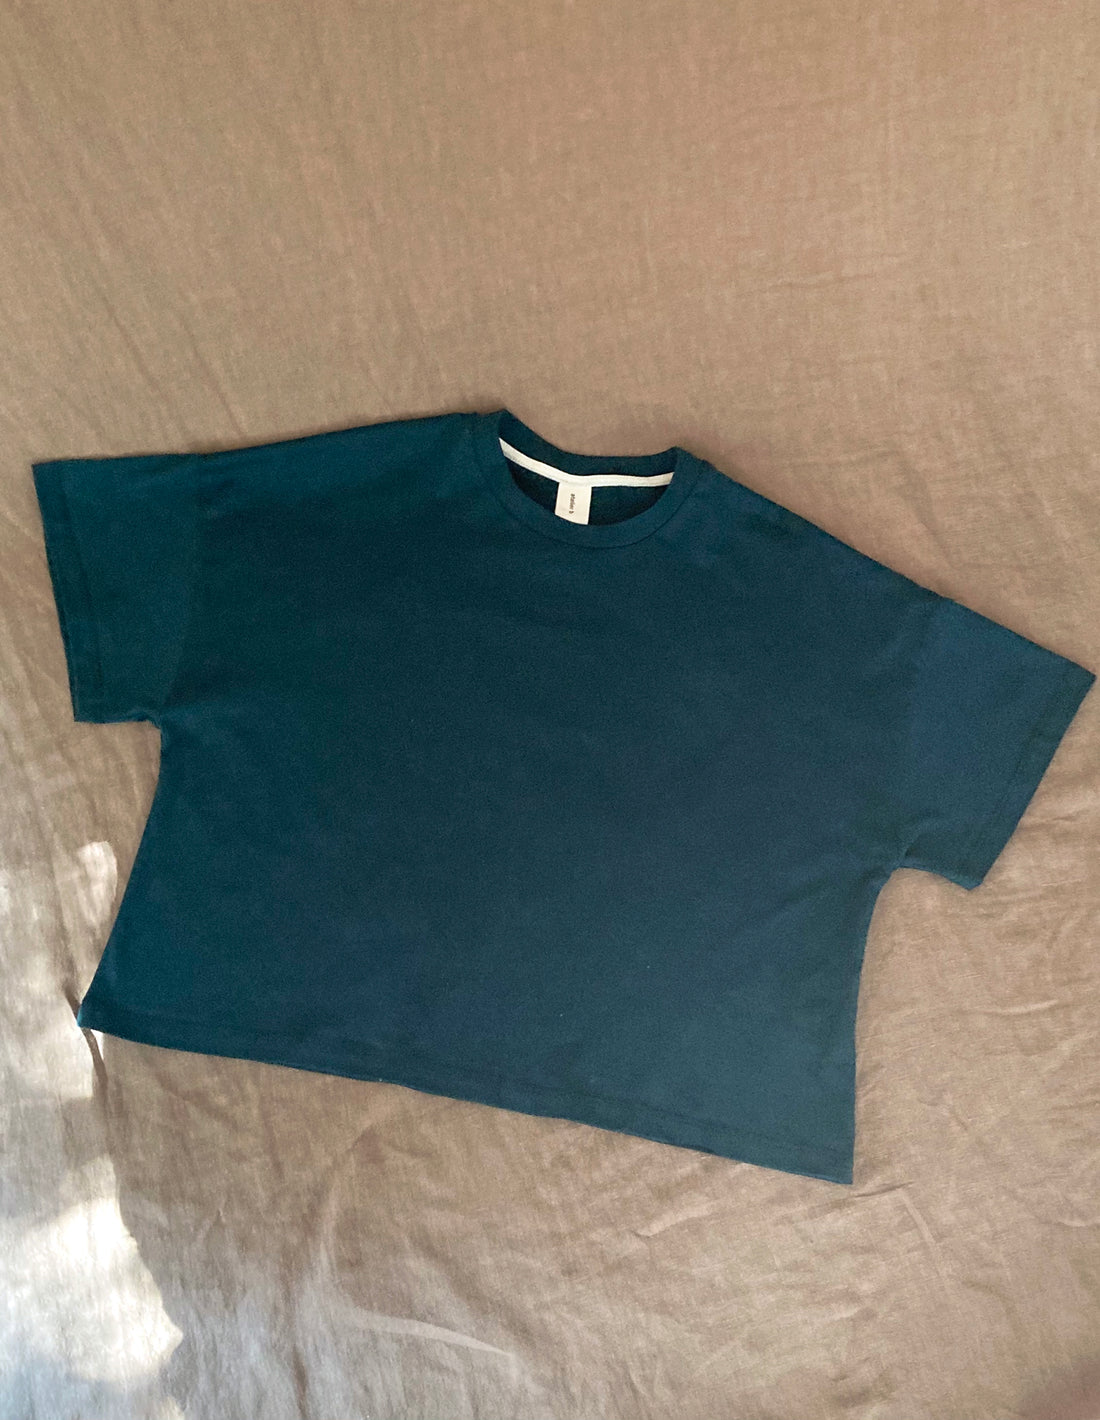 Boxy t-shirt No2370w, 6 colours